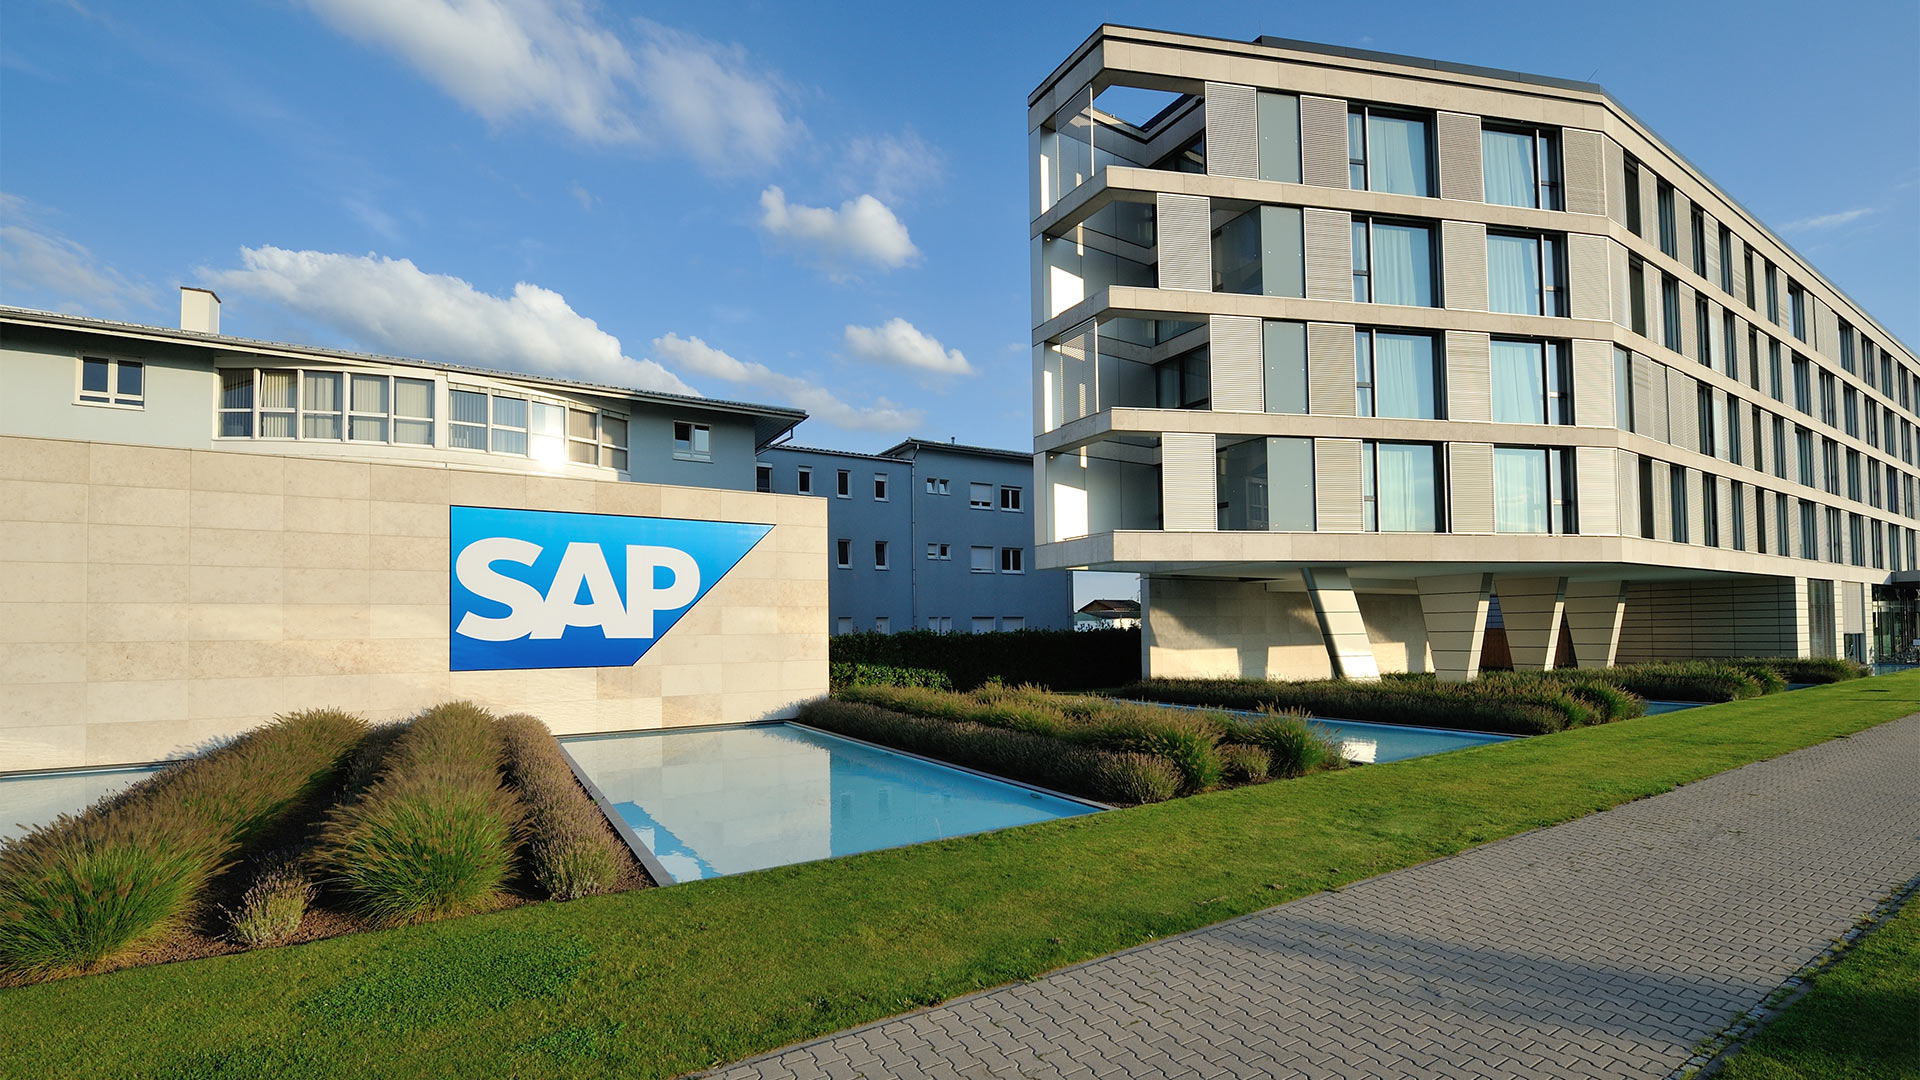 SAP will 3000 Stellen abbauen und Kosten senken